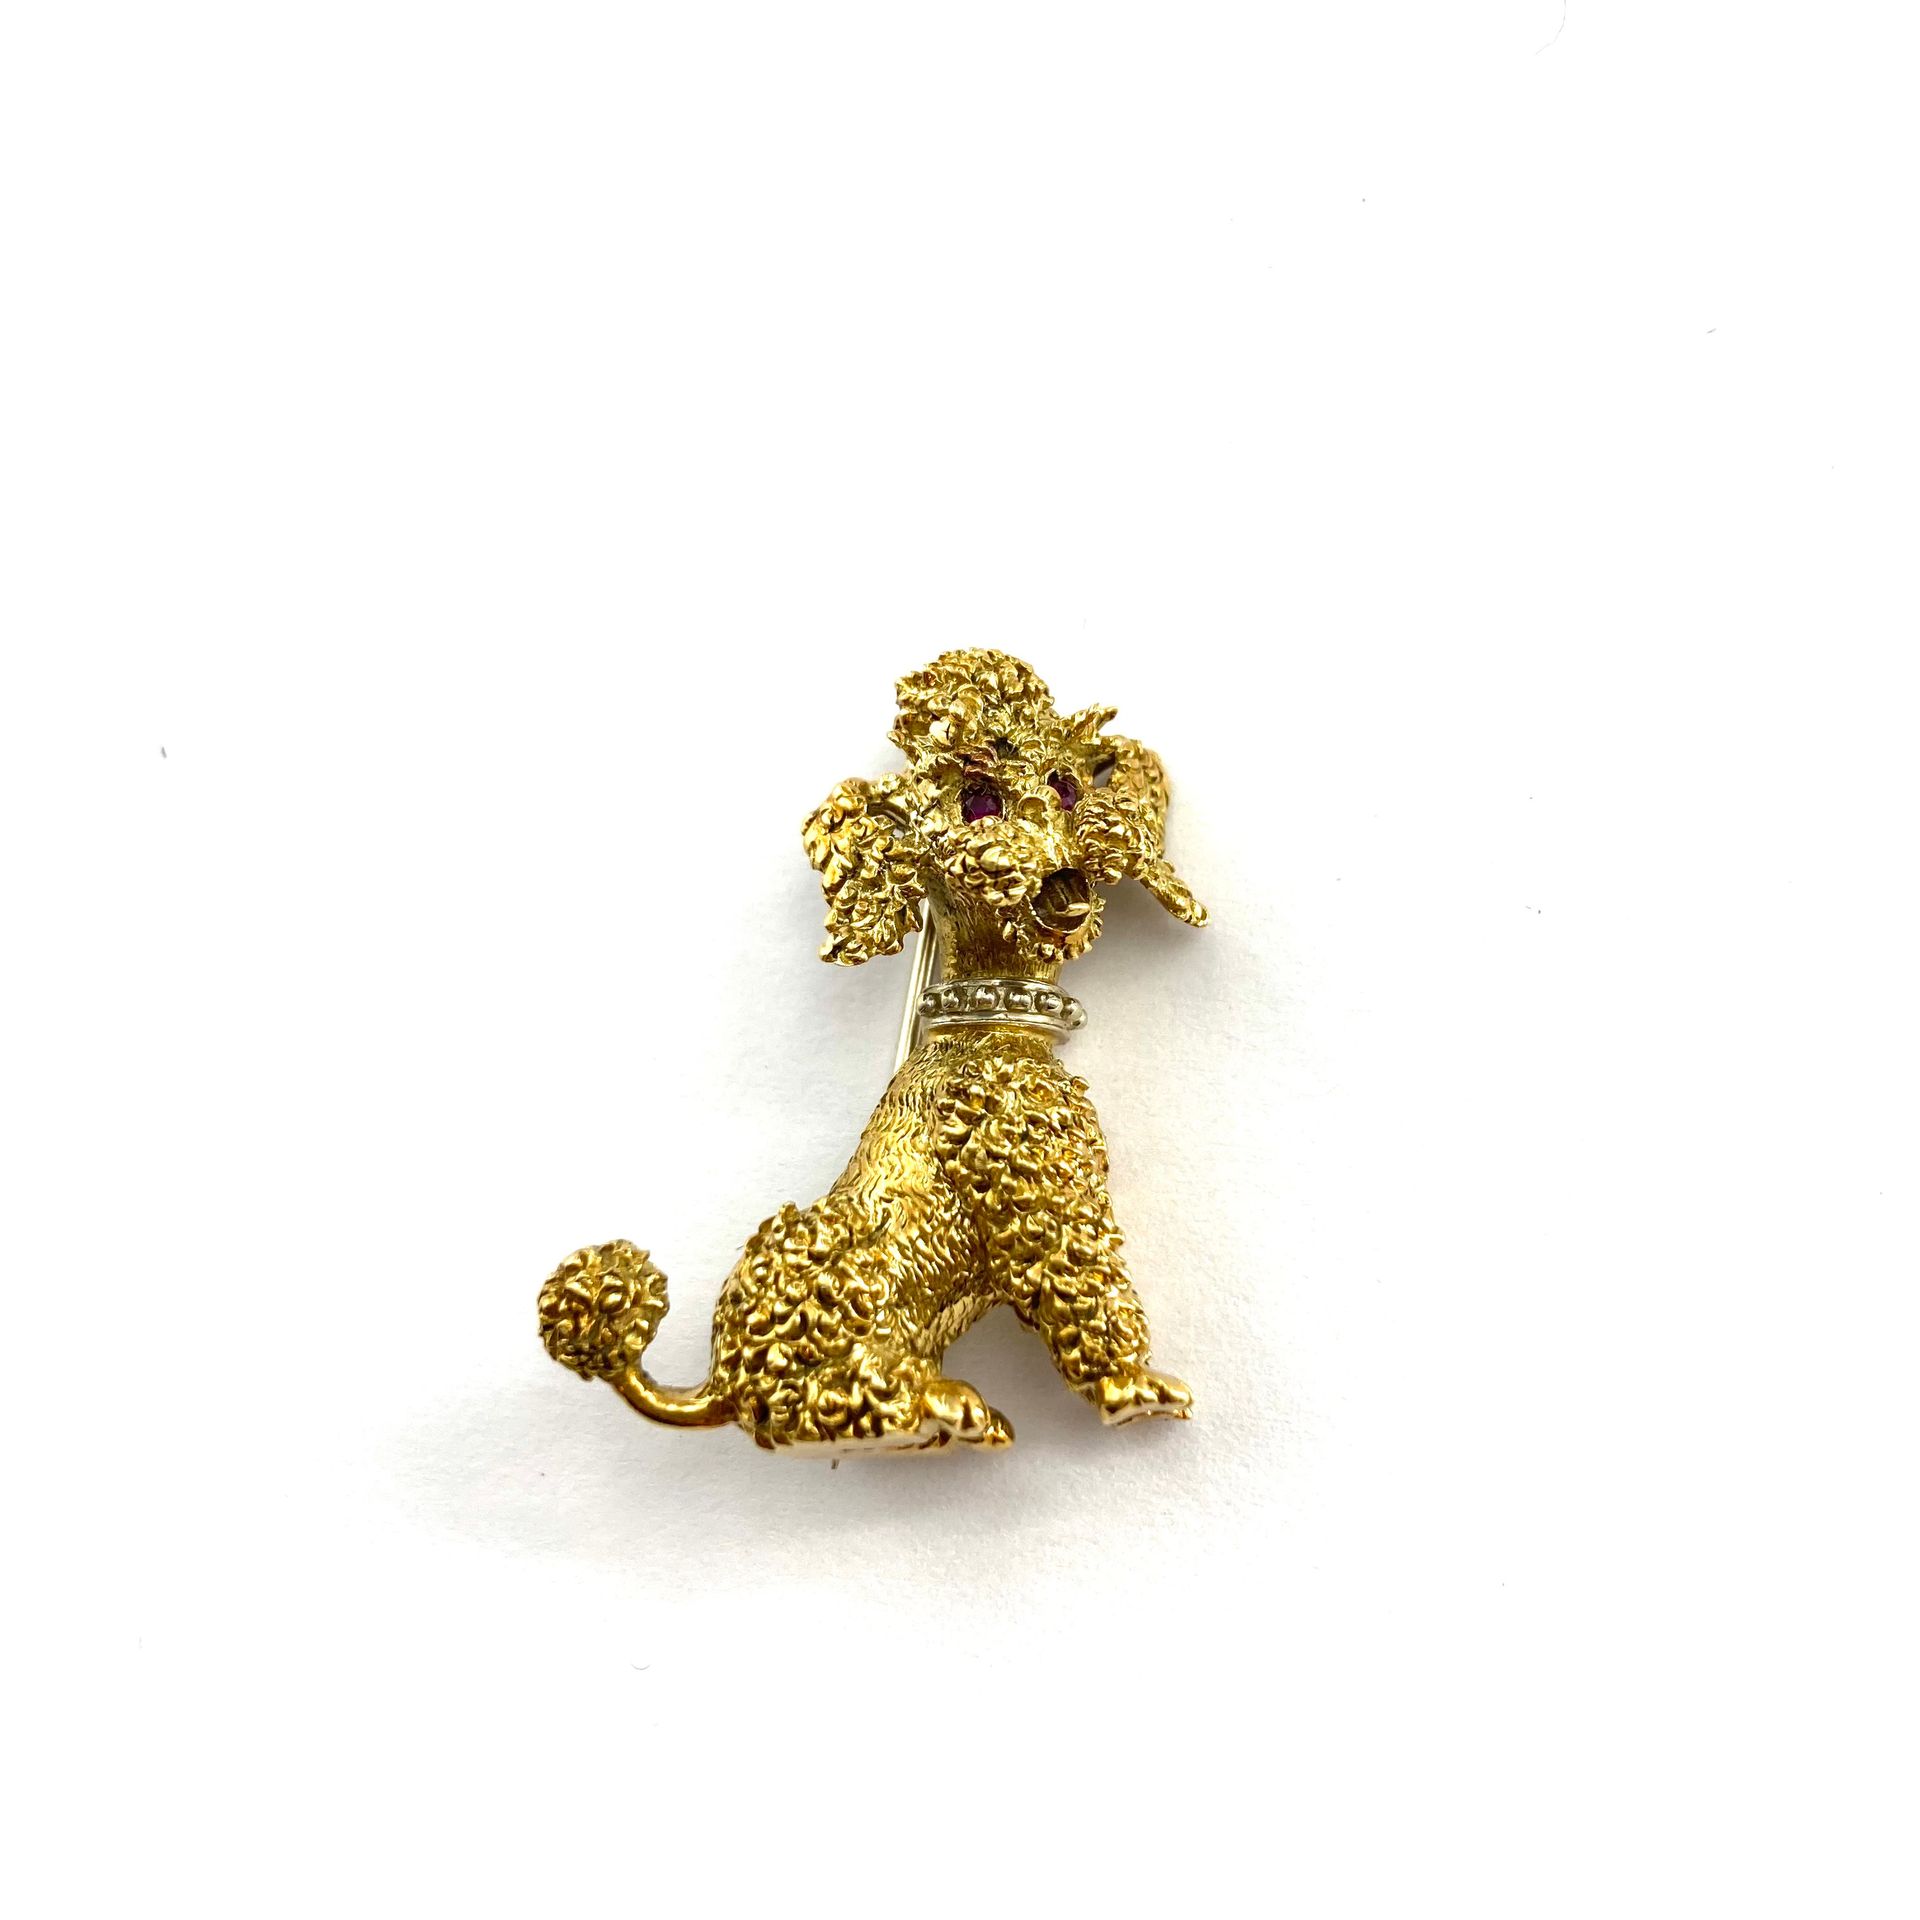 Null Broche de caniche en oro amarillo de 18k (750).

Peso bruto: 10,40 g.